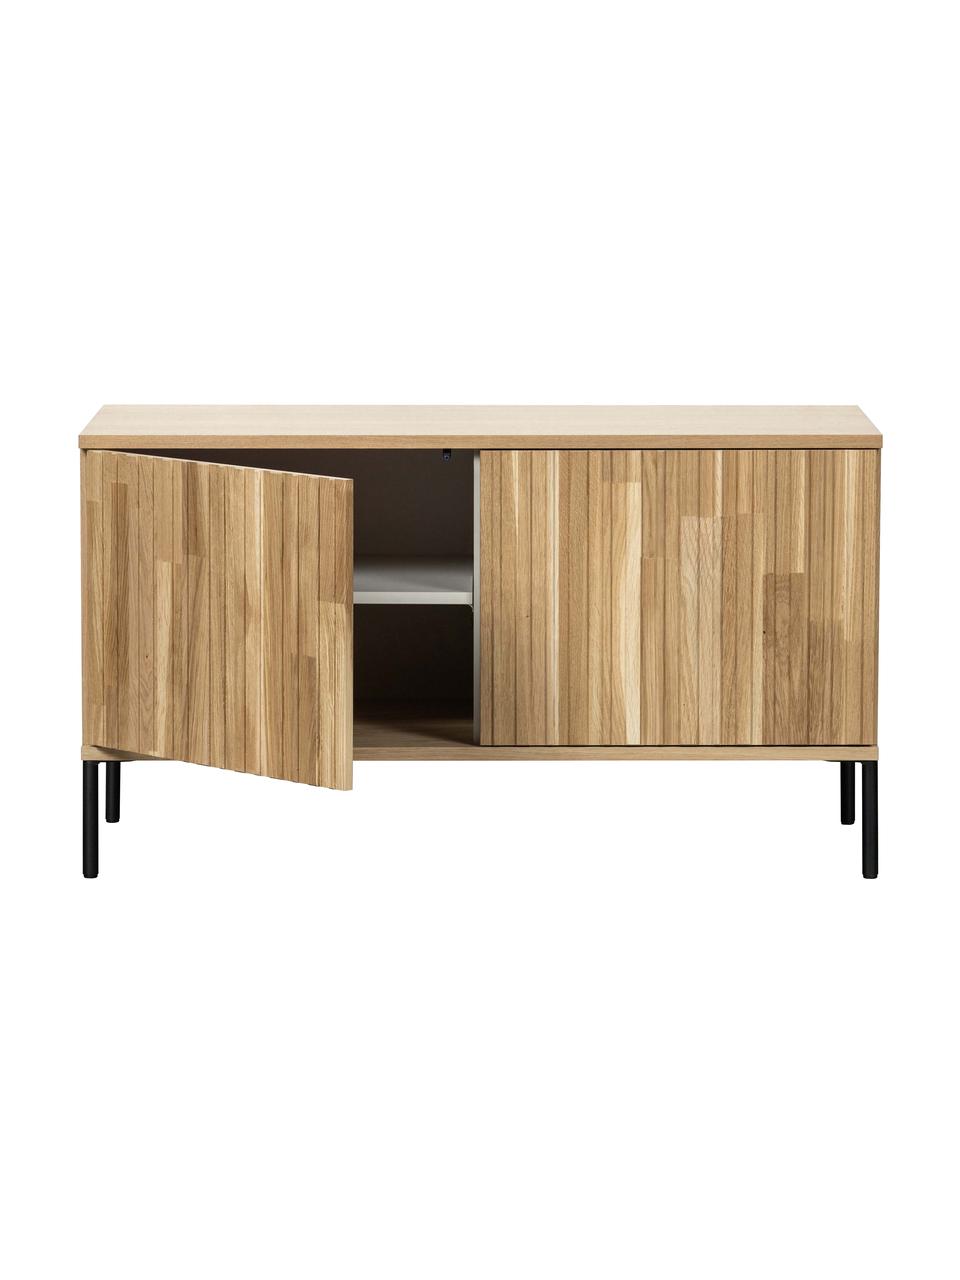 Tv-meubel Avourio met geribde voorzijde van eikenhout, 2 deuren, Frame: eikenhout, FSC-gecertific, Poten: gecoat metaal, Eikenhout, B 100 cm x H 56 cm